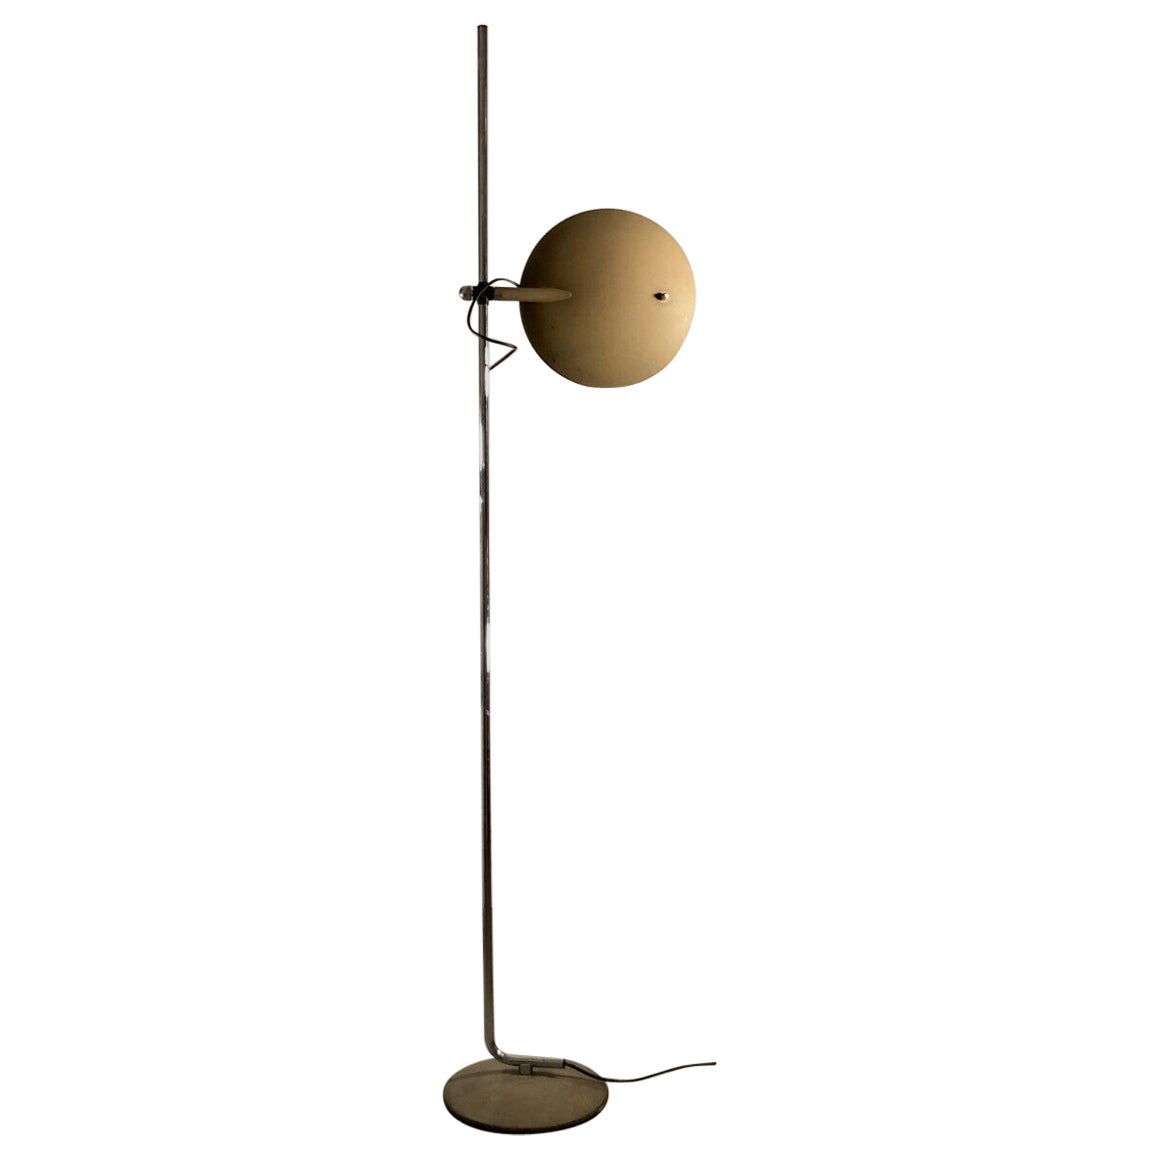 A POST-MODERN Minimal FLOOR LAMP by RICO & ROSEMARIE BALTENSWEILER, Swiss 1970